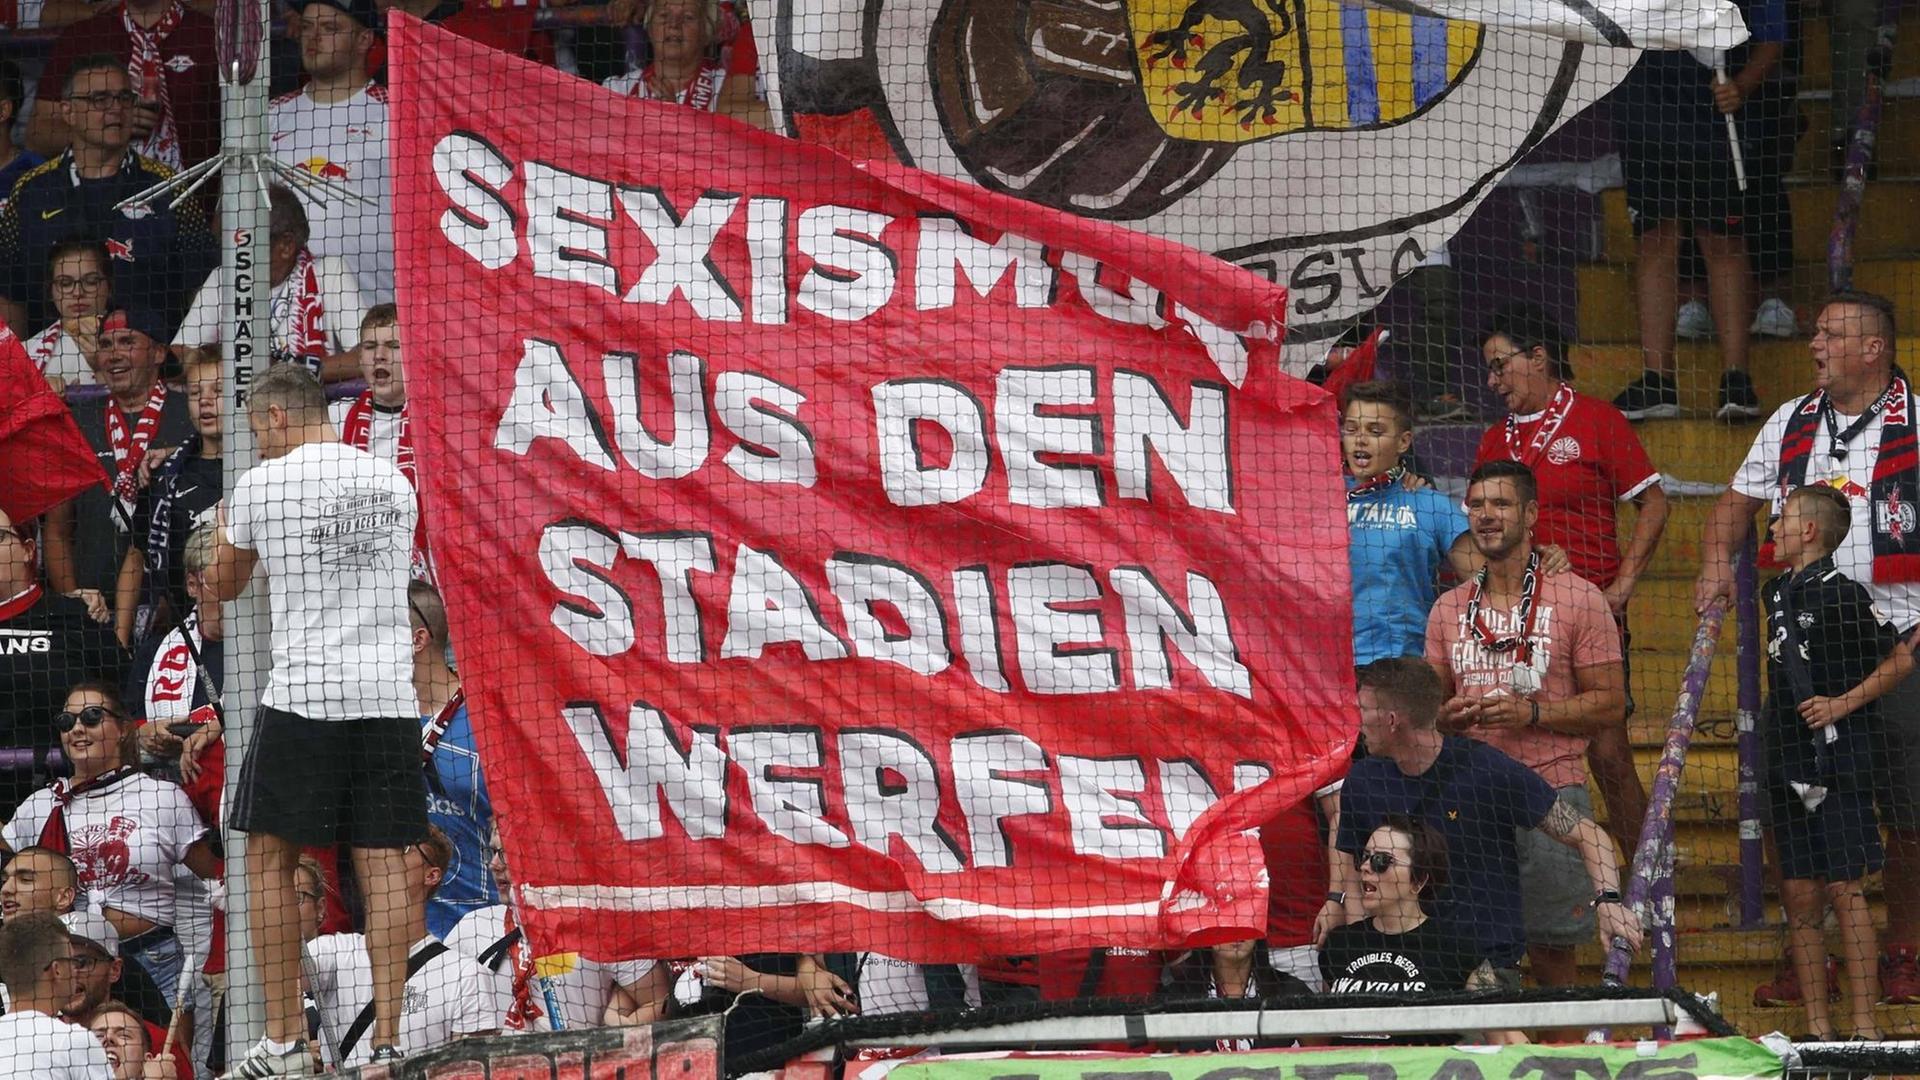 Fans von RB Leipzig mit der Fahne: "Sexismus aus den Stadien werfen"